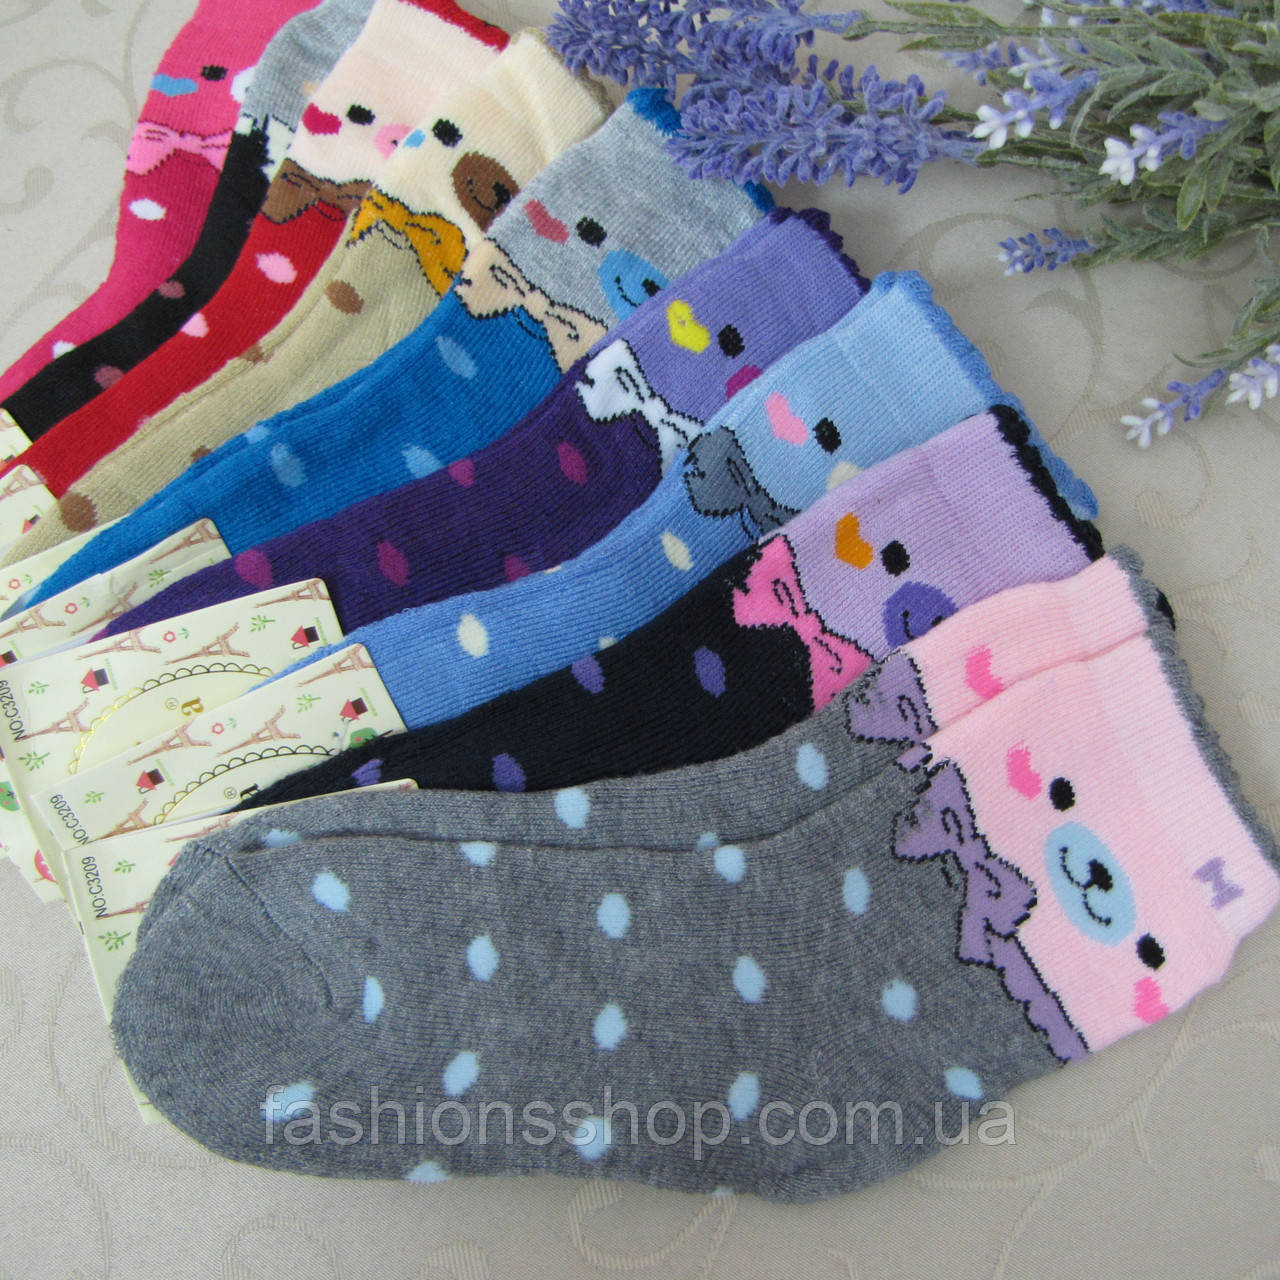 Шкарпетки махрові для дівчаток M (26-31 р.). Корона . Дитячі шкарпетки, шкарпетки махрові для дітей